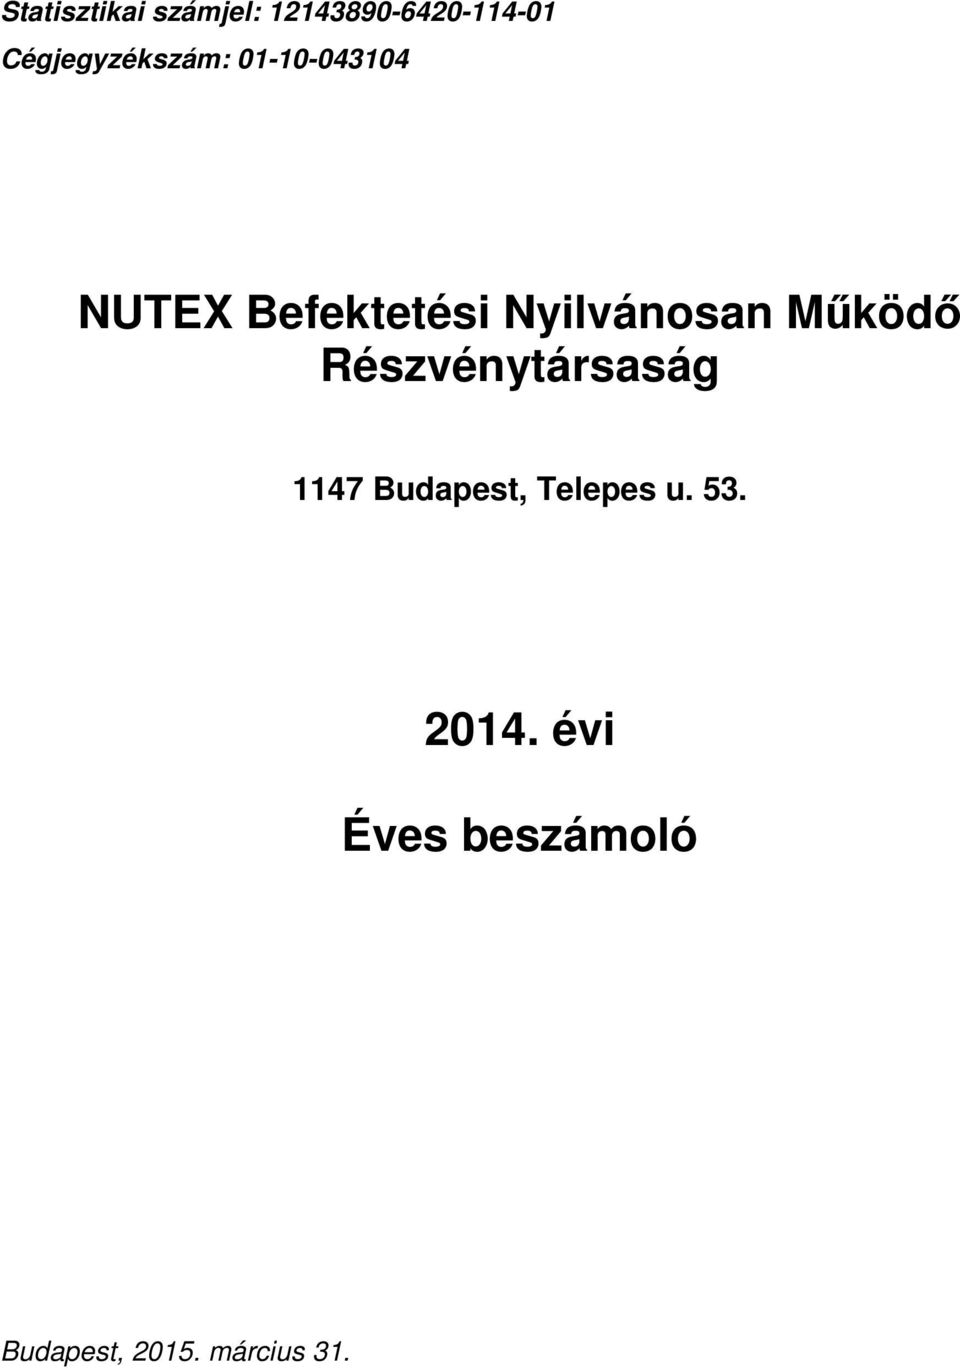 NUTEX Befektetési Nyilvánosan Működő Részvénytársaság évi. Éves beszámoló -  PDF Free Download